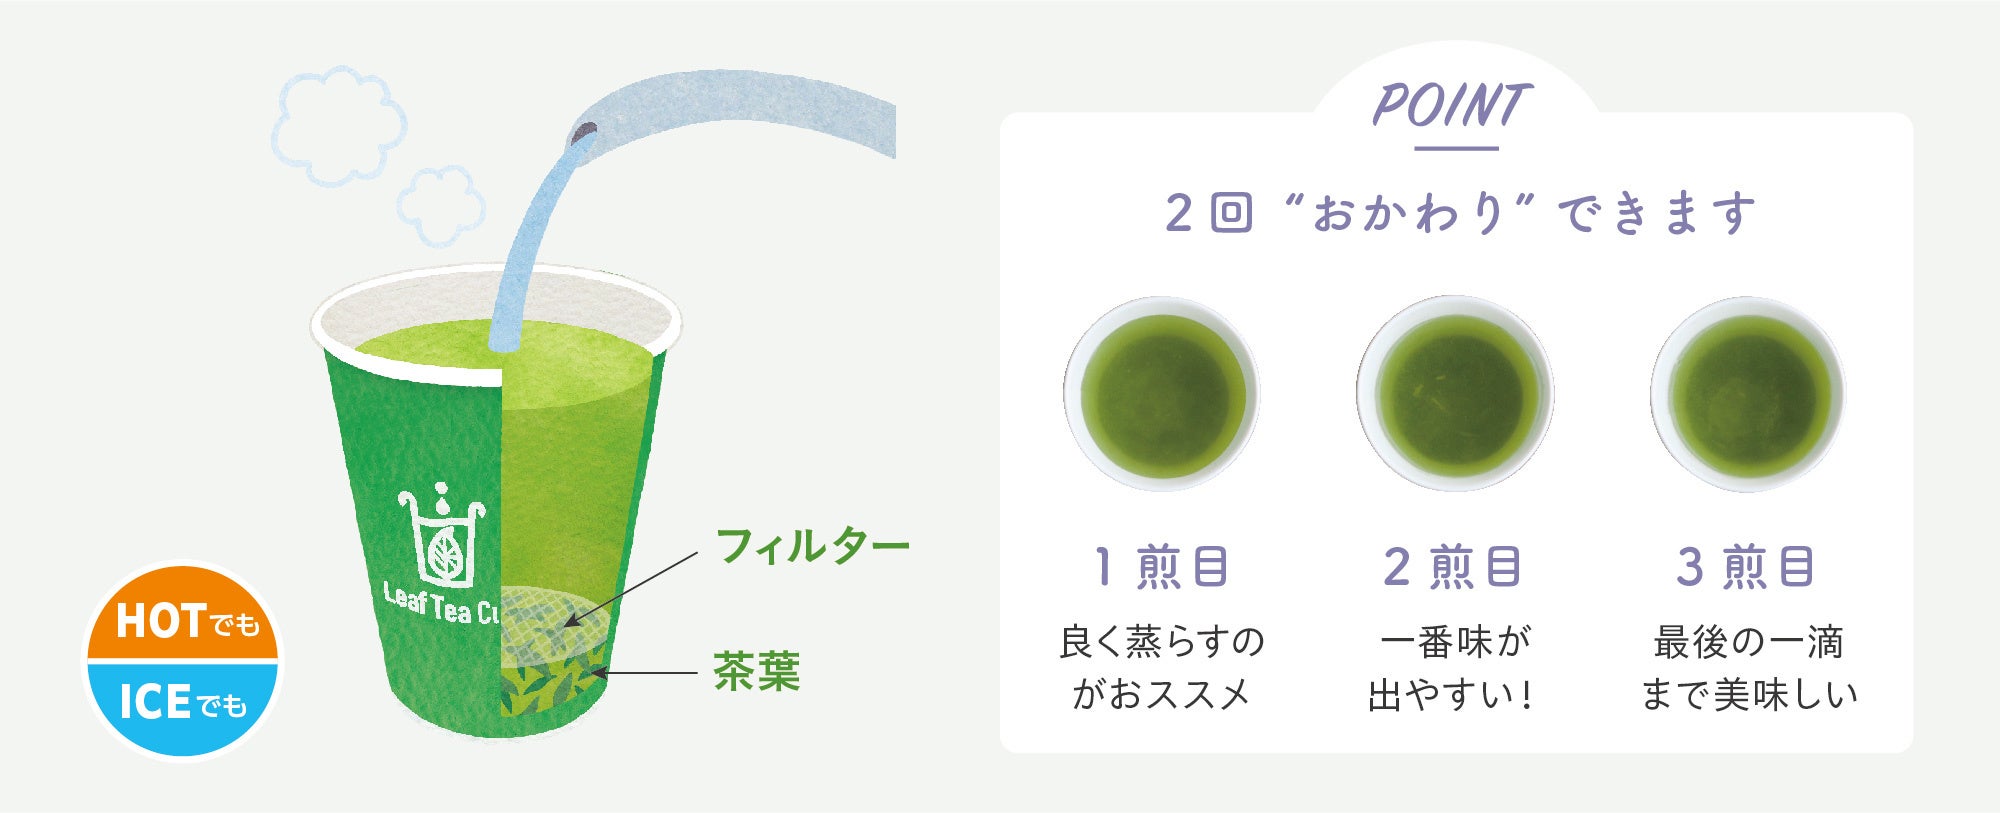 日本初・茶葉入り紙コップ 【 リーフティーカップ 】新商品［シトラス緑茶］をPOP-UPショップで試飲・販売